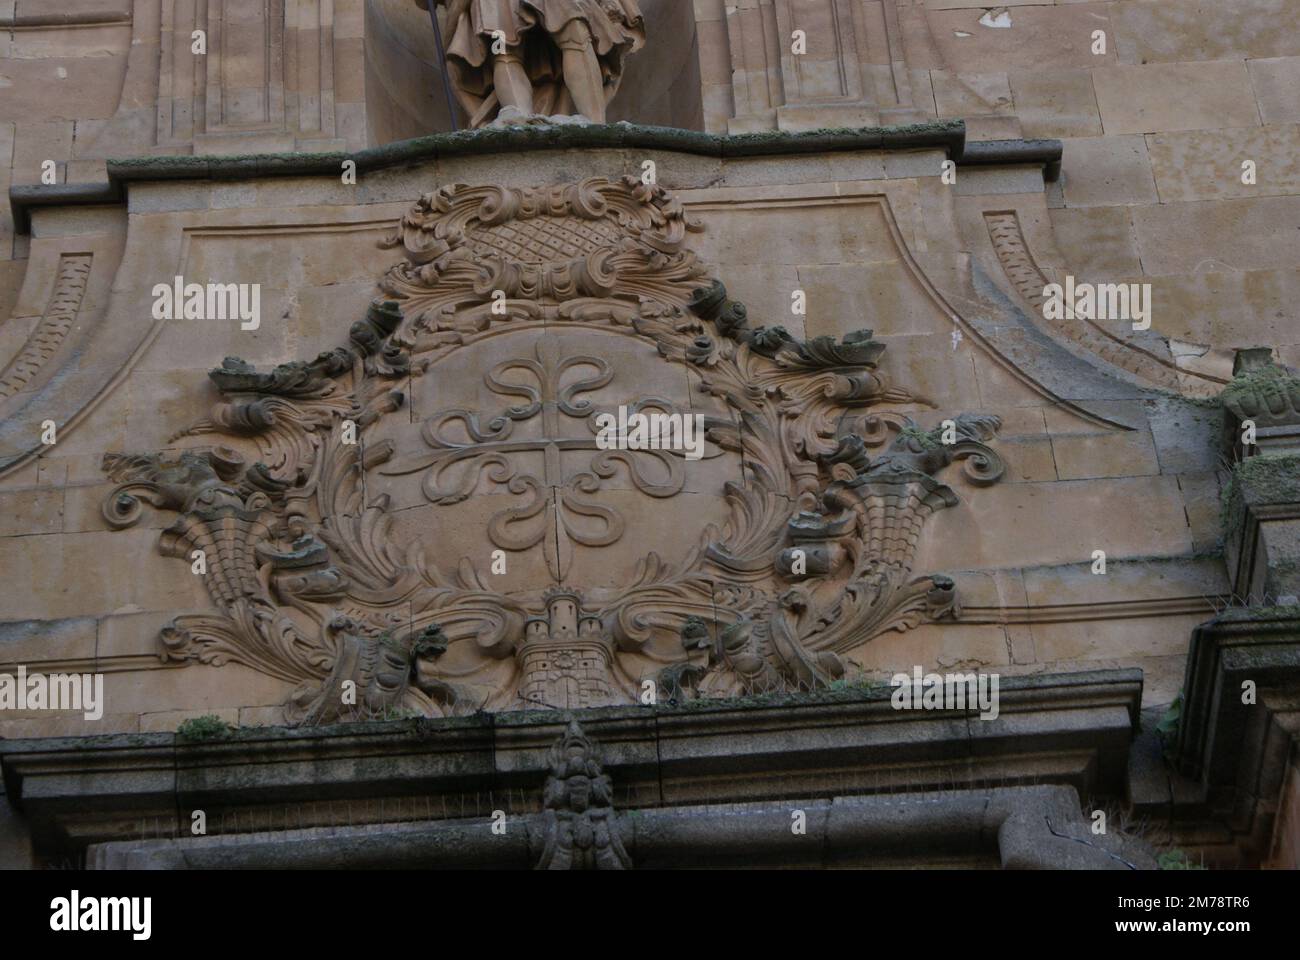 ARCHITECTURE DE SALAMANQUE. Salamanca en espagnol, est une ville de la province de Salamanque dans la communauté autonome de Castille-et-Le Stock Photo